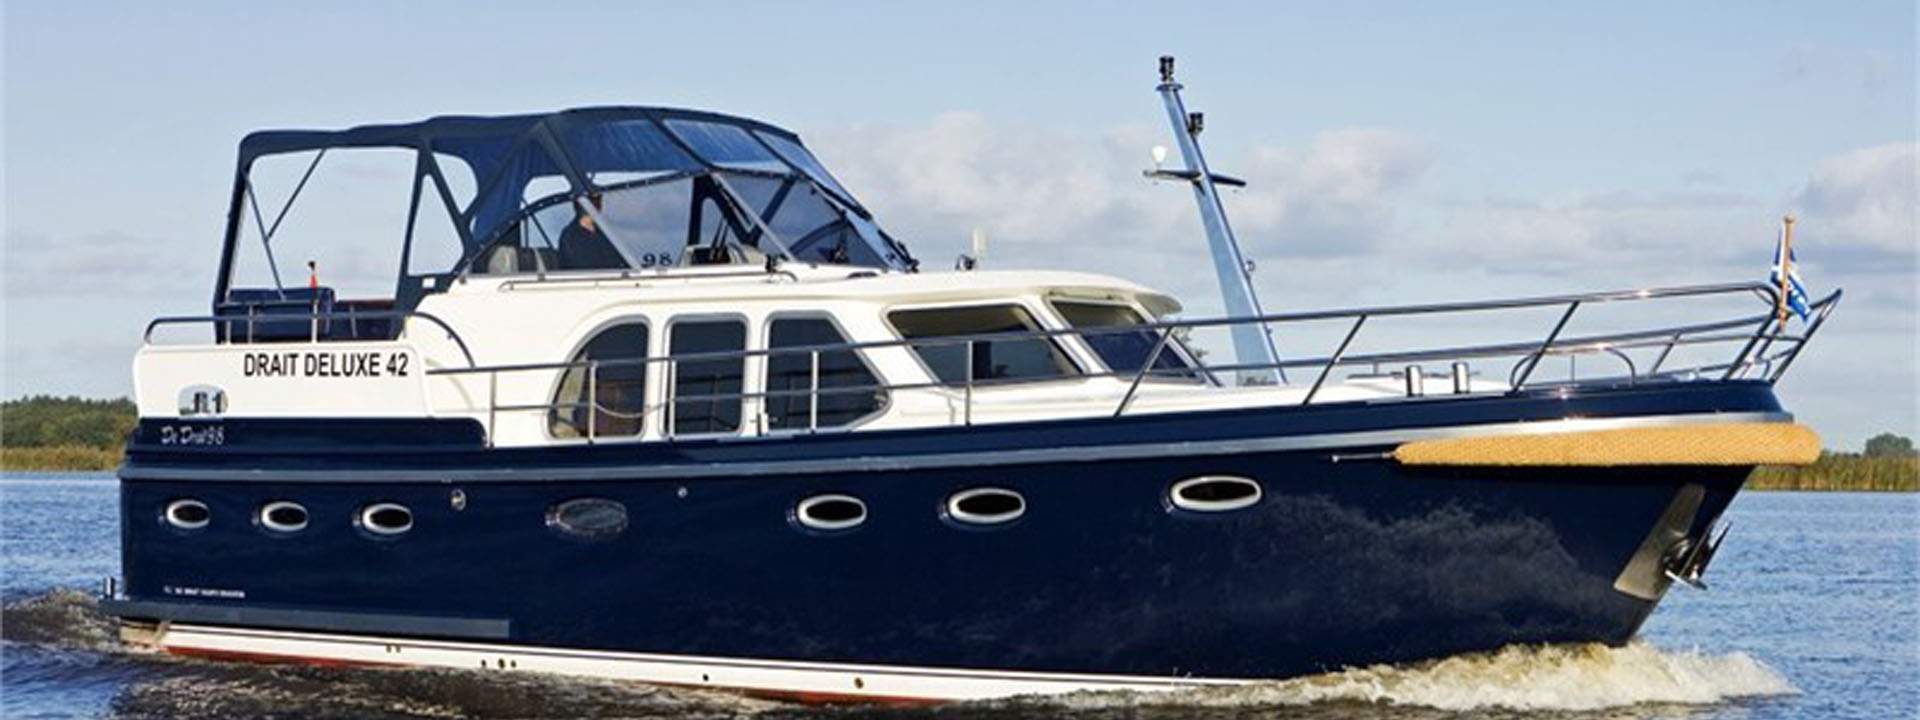 Houseboat De Drait Deluxe 42